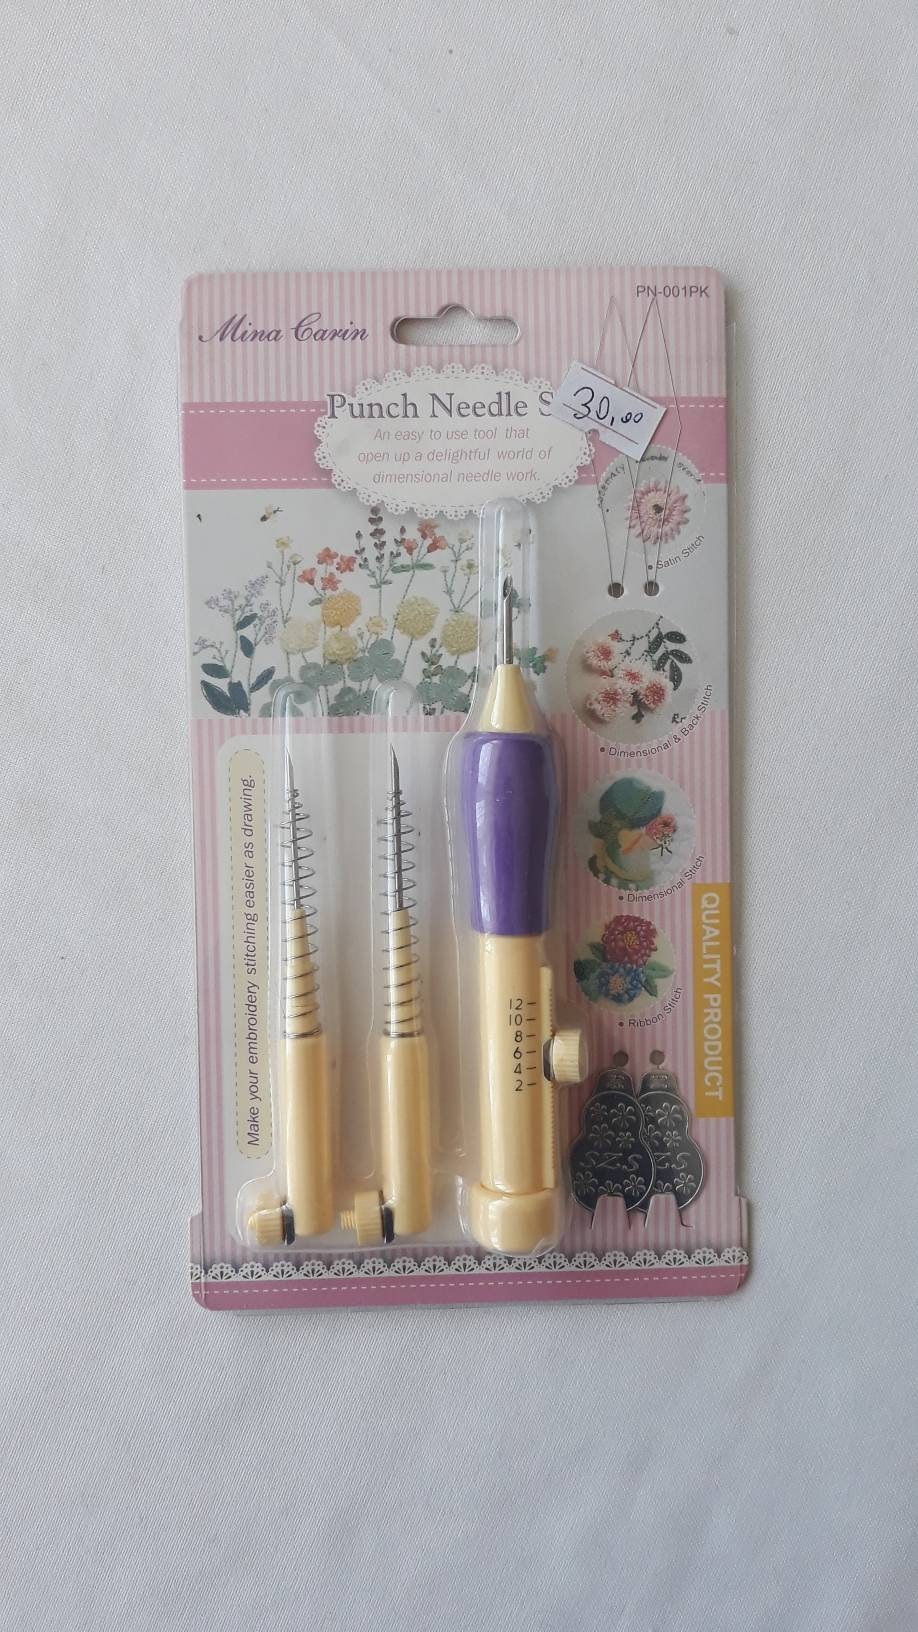 Adjustable Punch Needle Tool. Needle Punching Crafting. Free Punch Needle  Fabric 